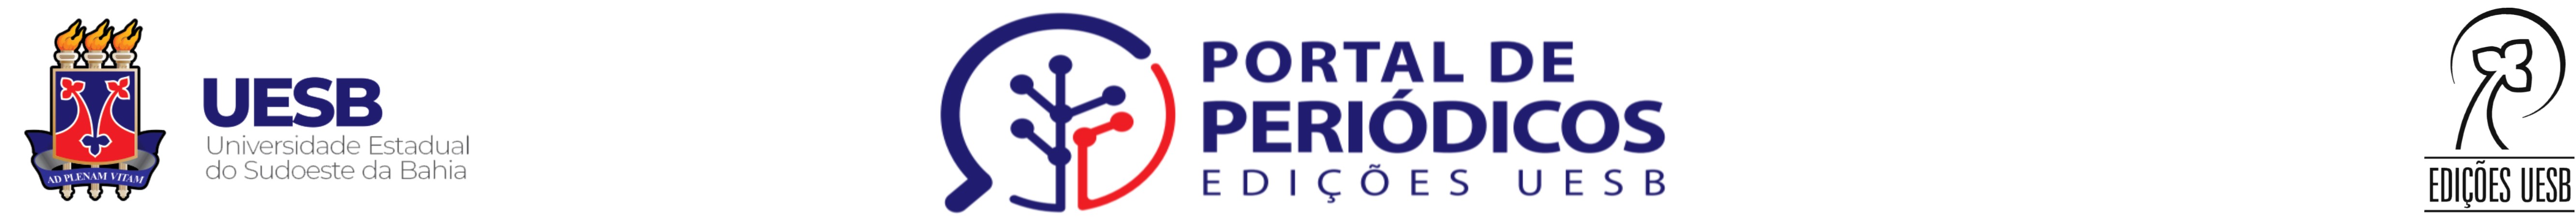 Logomarca do Portal